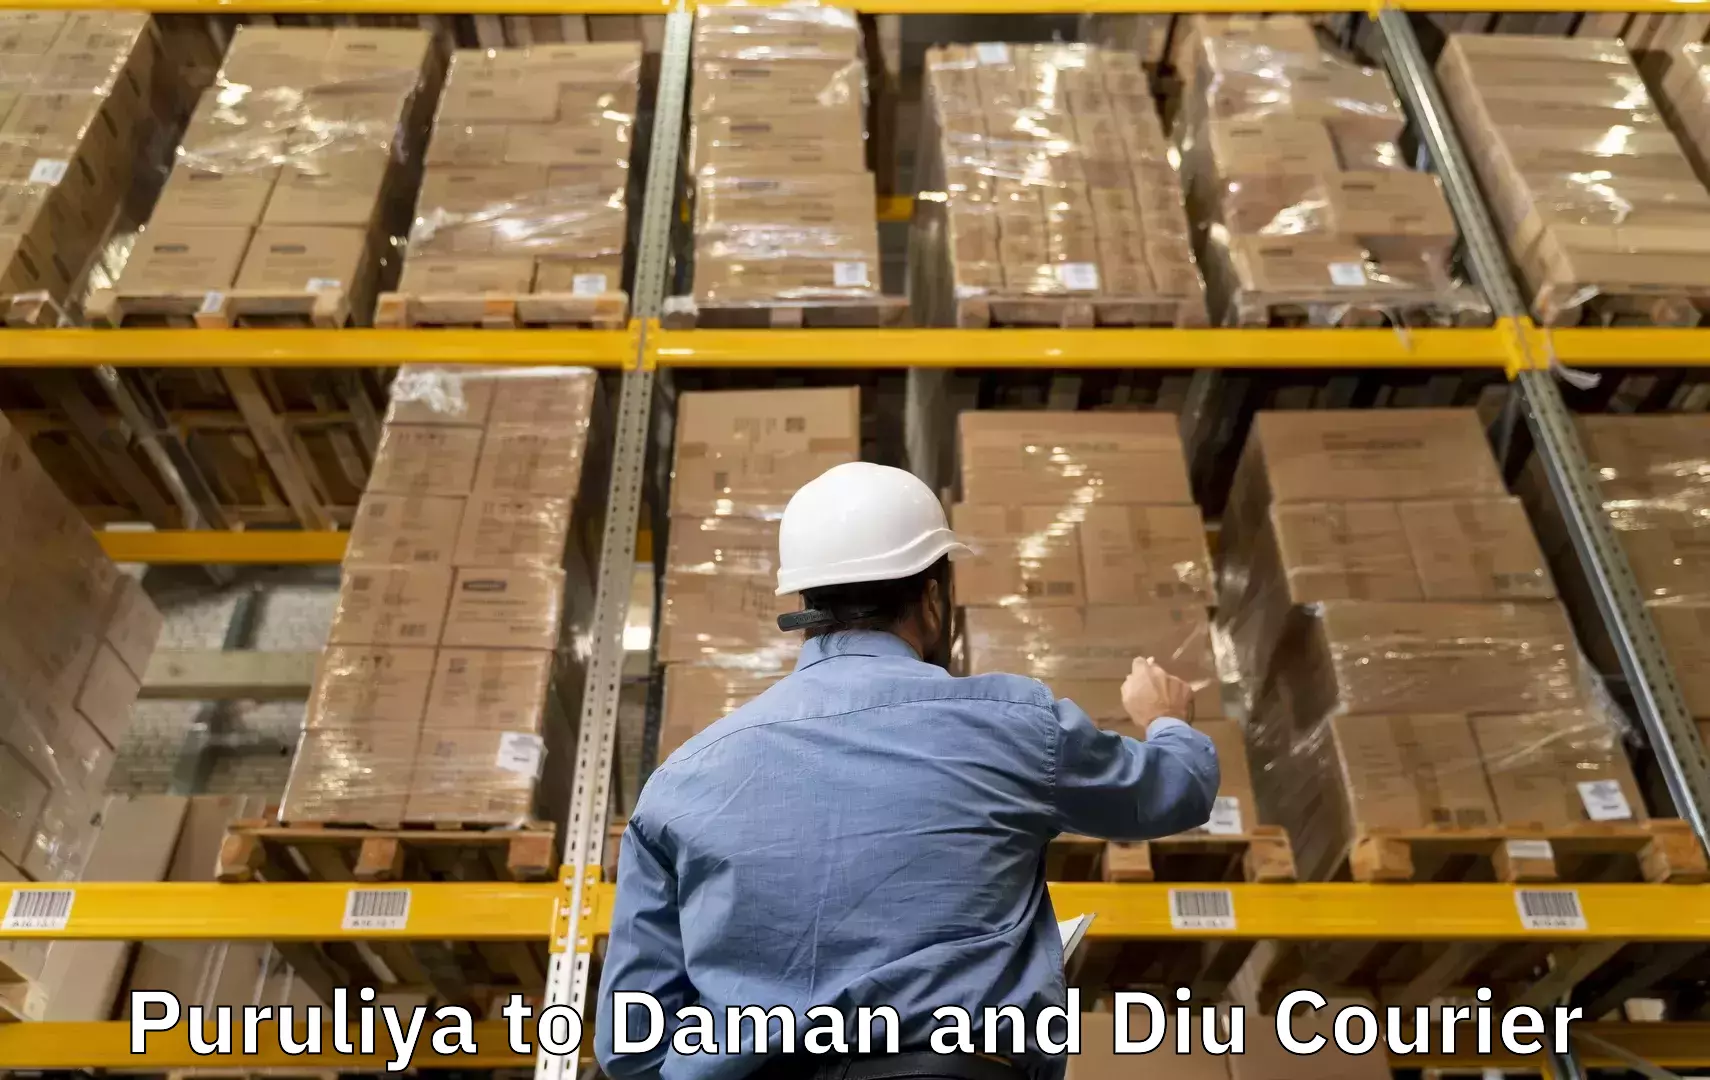 Baggage shipping experience Puruliya to Daman and Diu